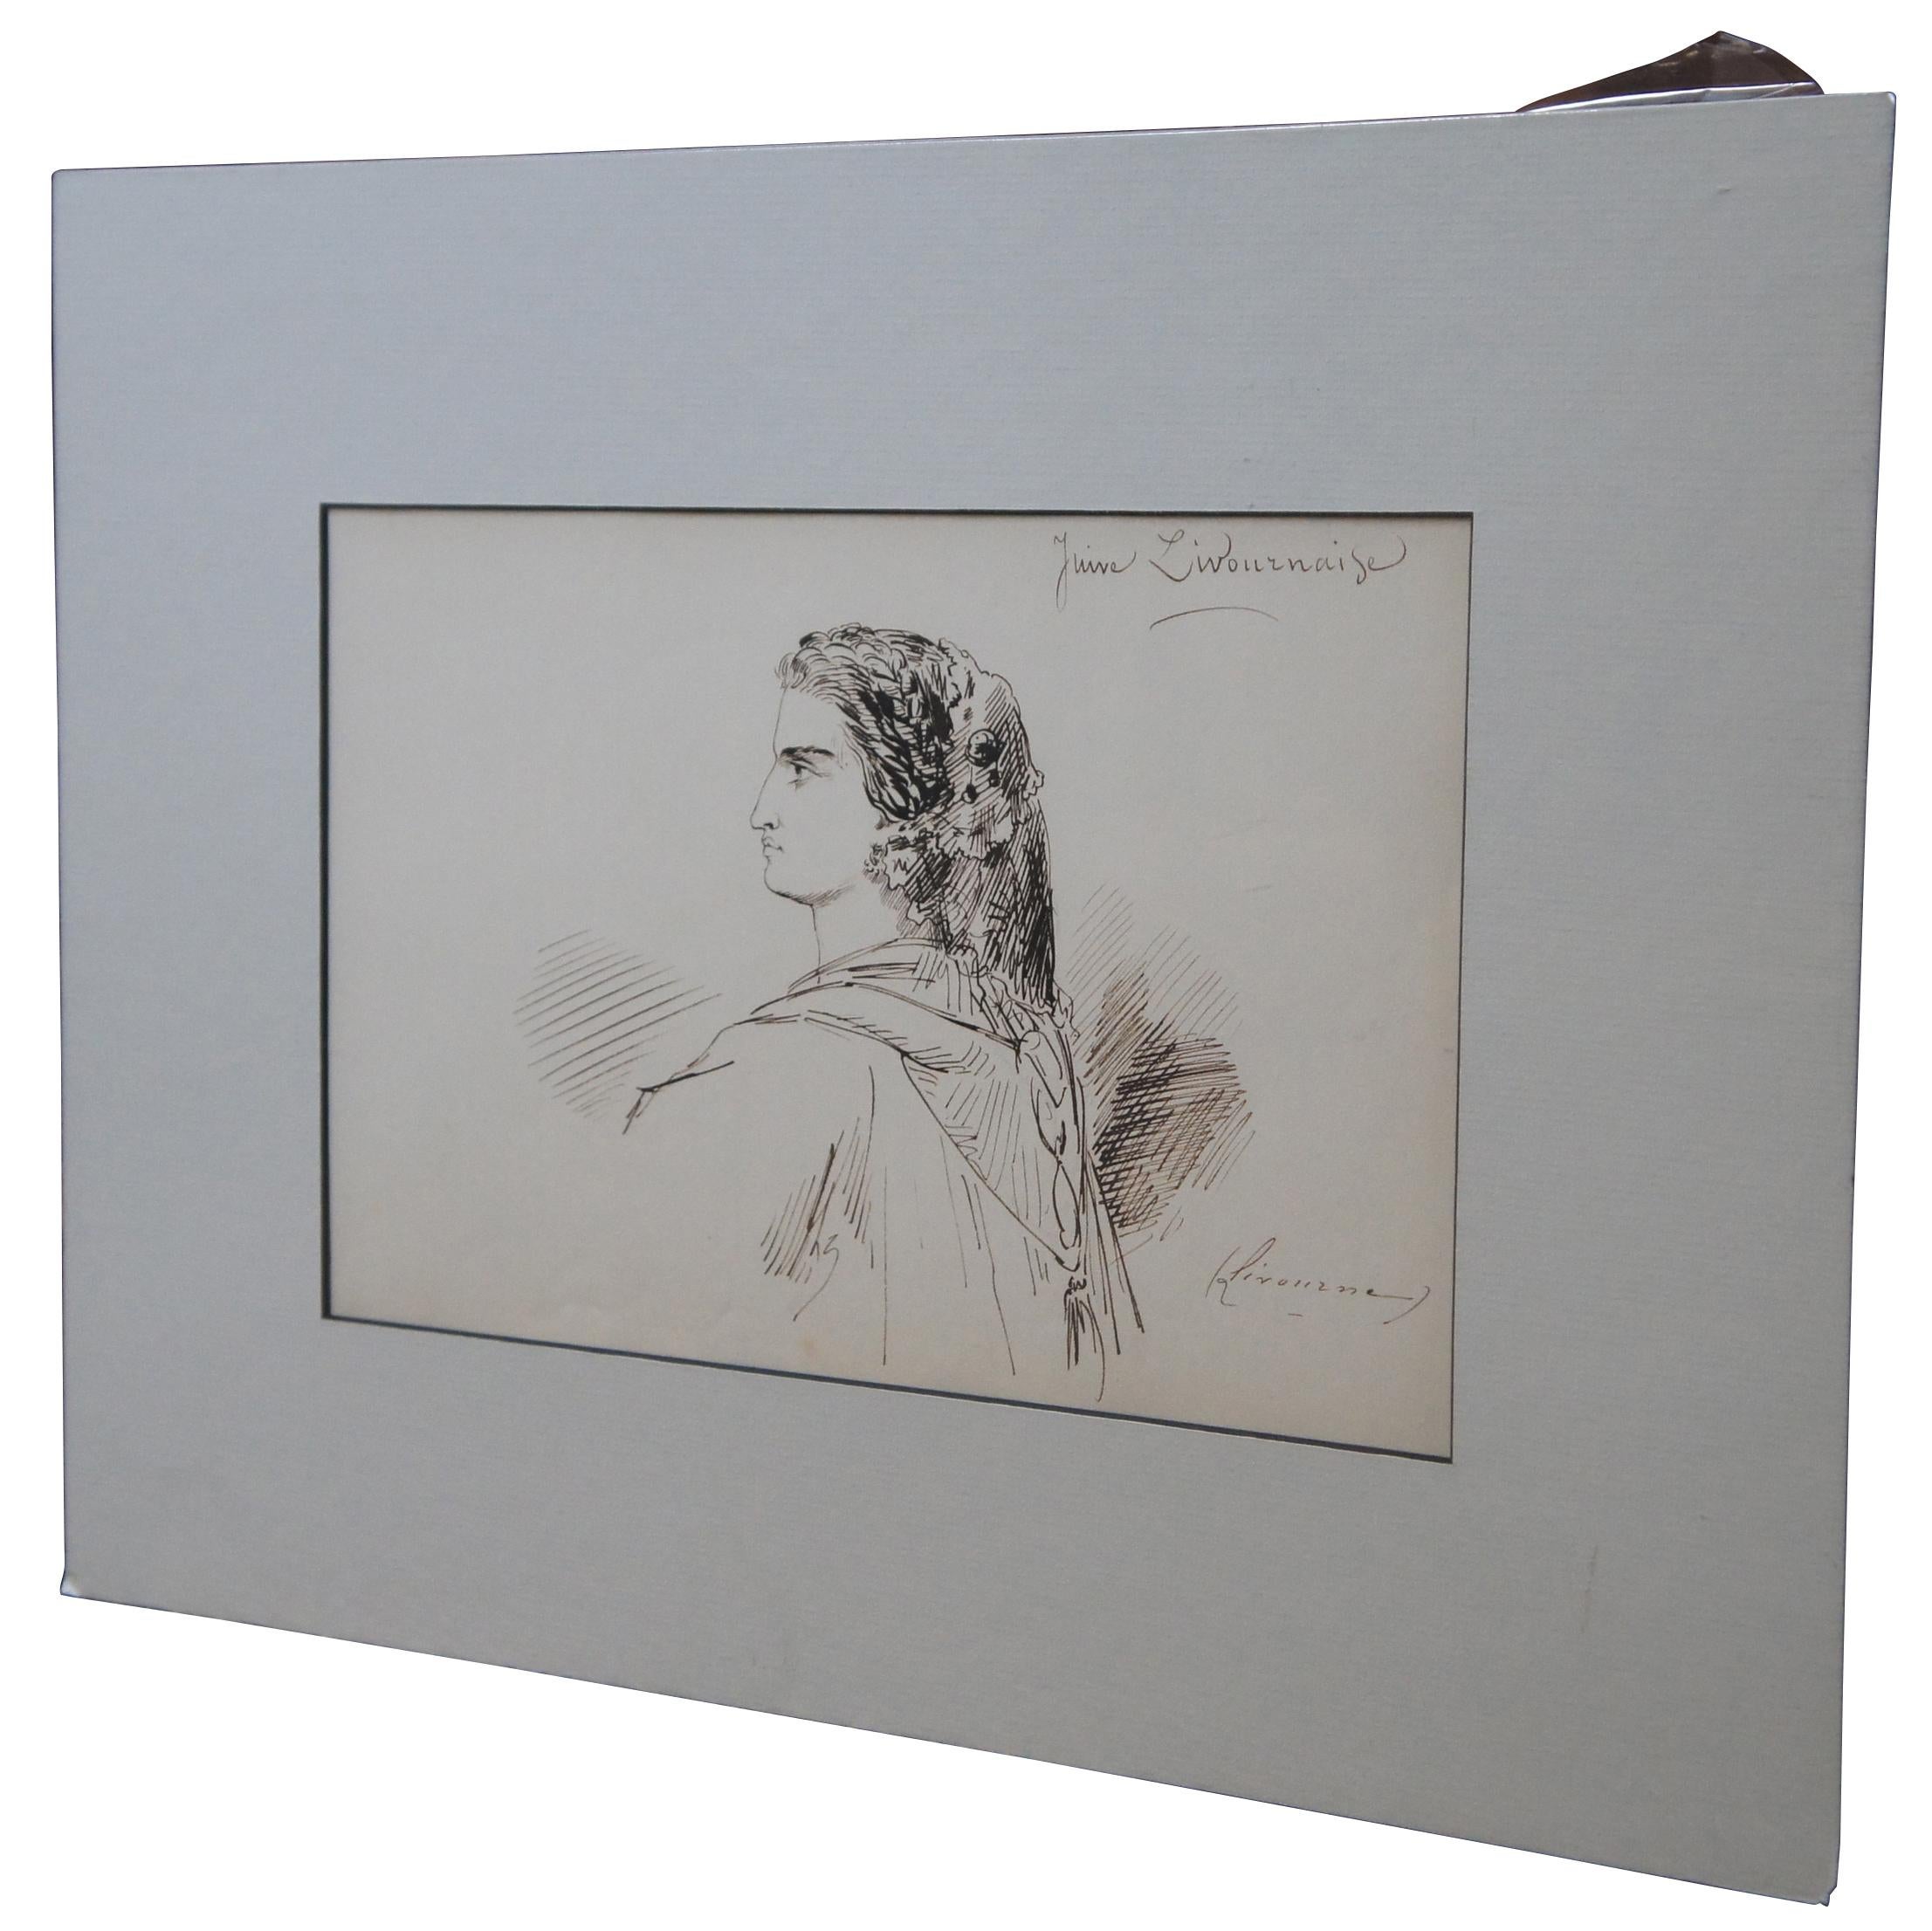 Antike Tuschezeichnung von Emile Dupont (französischer Maler, 1822-1885) aus dem 19. Jahrhundert, die das Profil einer Frau mit kräftiger aquiliner Nase zeigt, die einen Spitzenschleier im Haar und einen Schal um die Schultern trägt.

Maße: Ohne